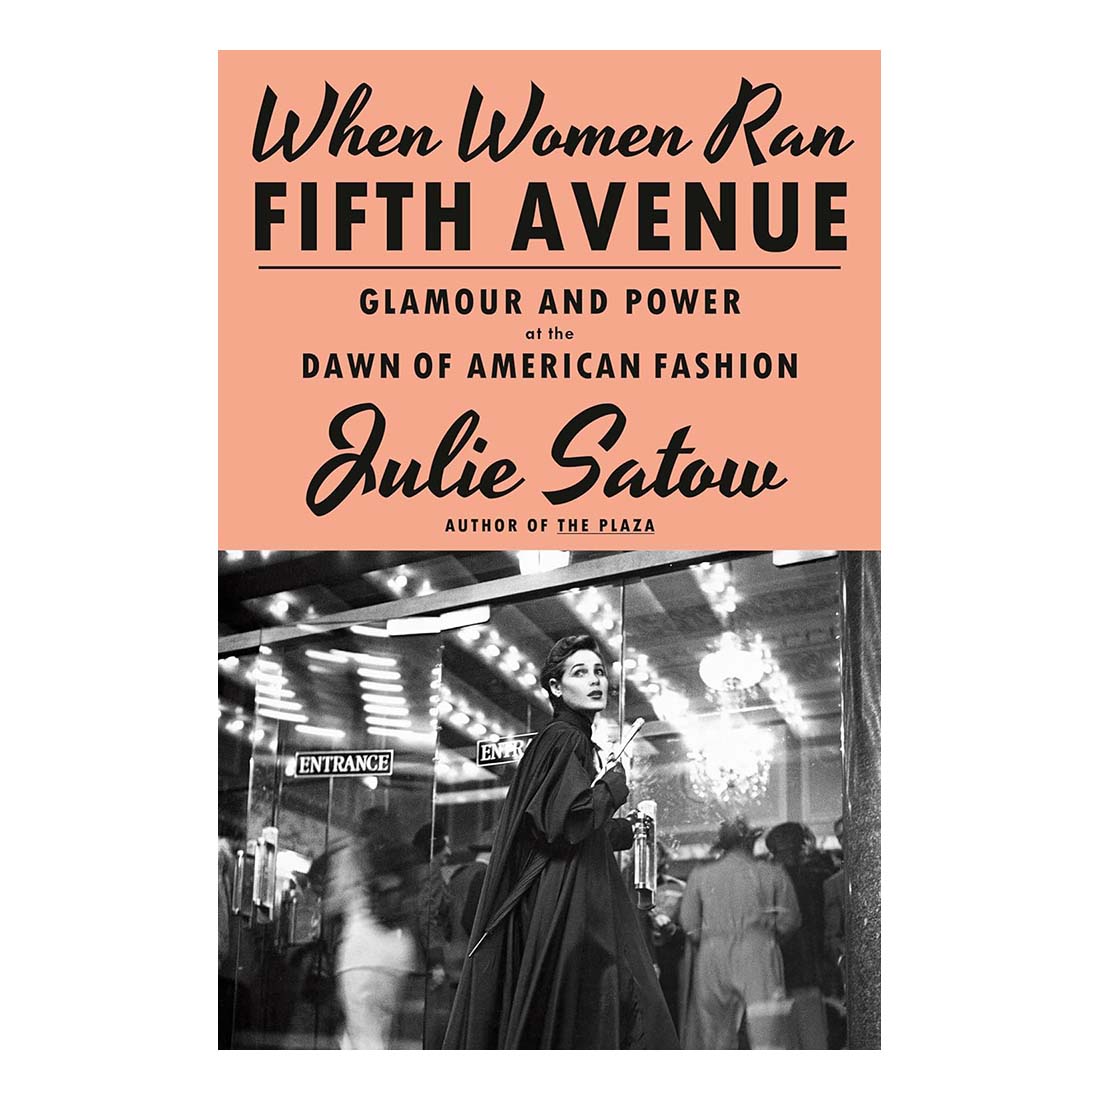 When Women Ran Fifth Avenue